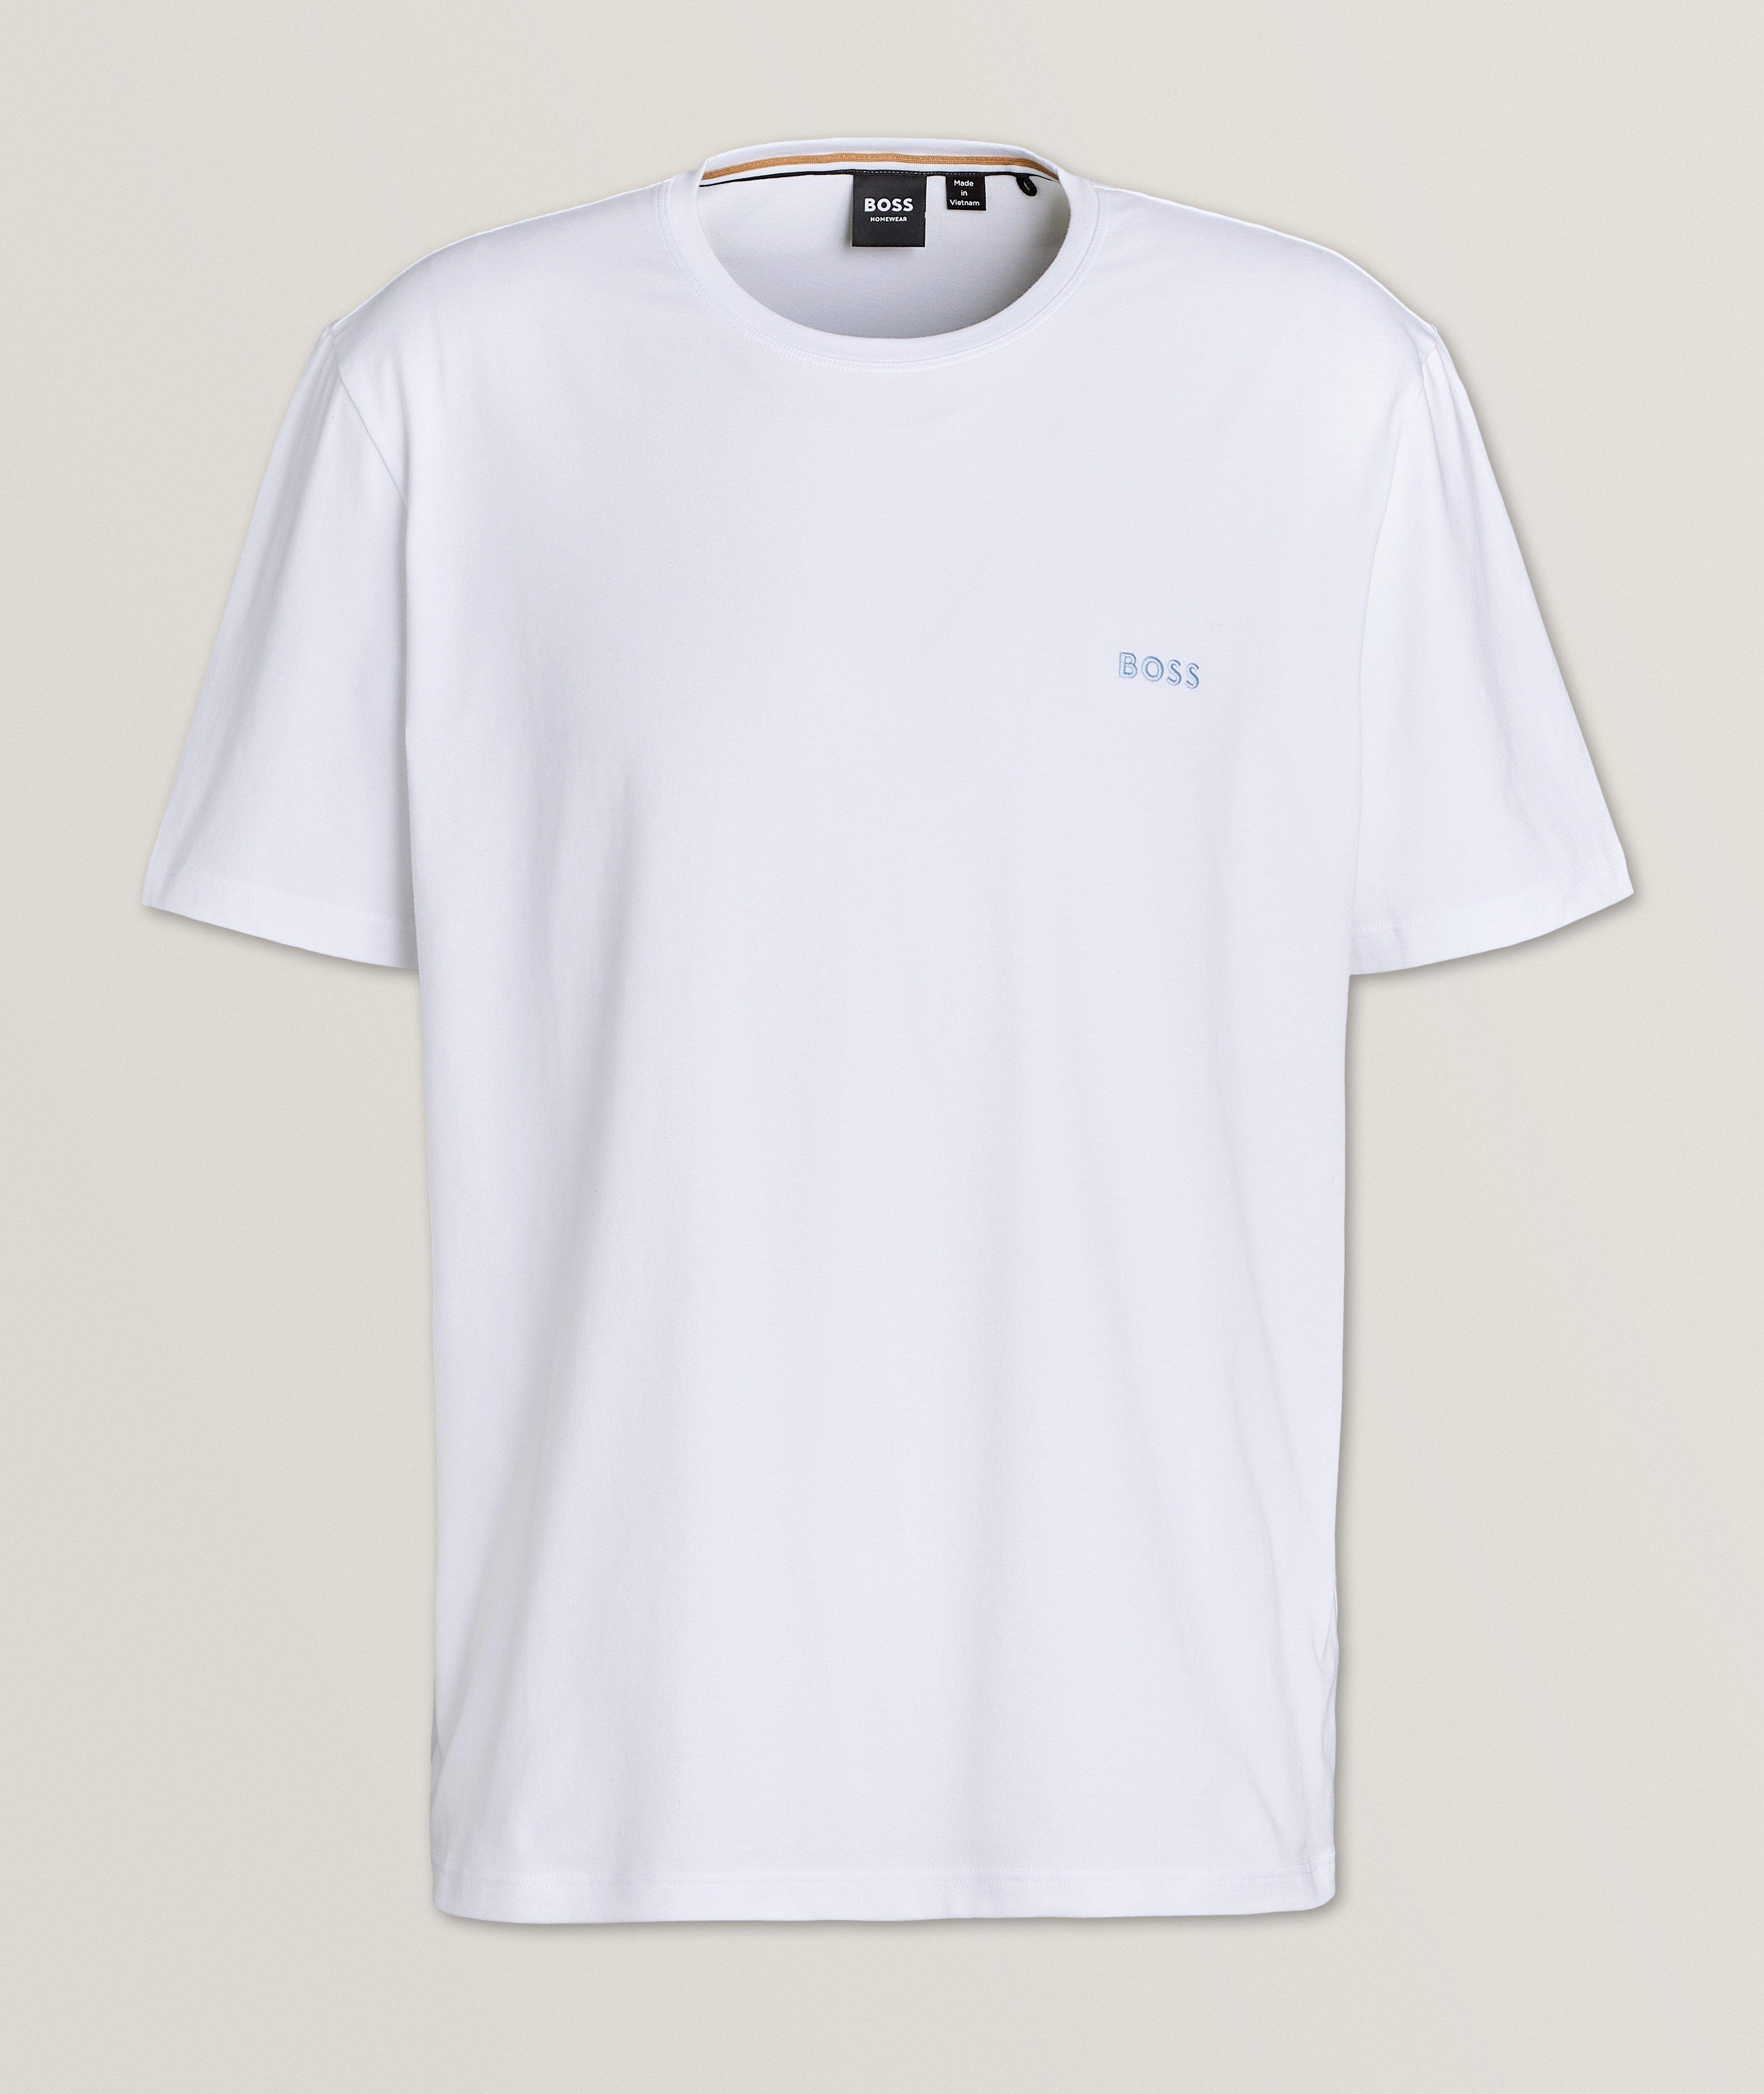 T-shirt en coton extensible, collection écoresponsable image 0